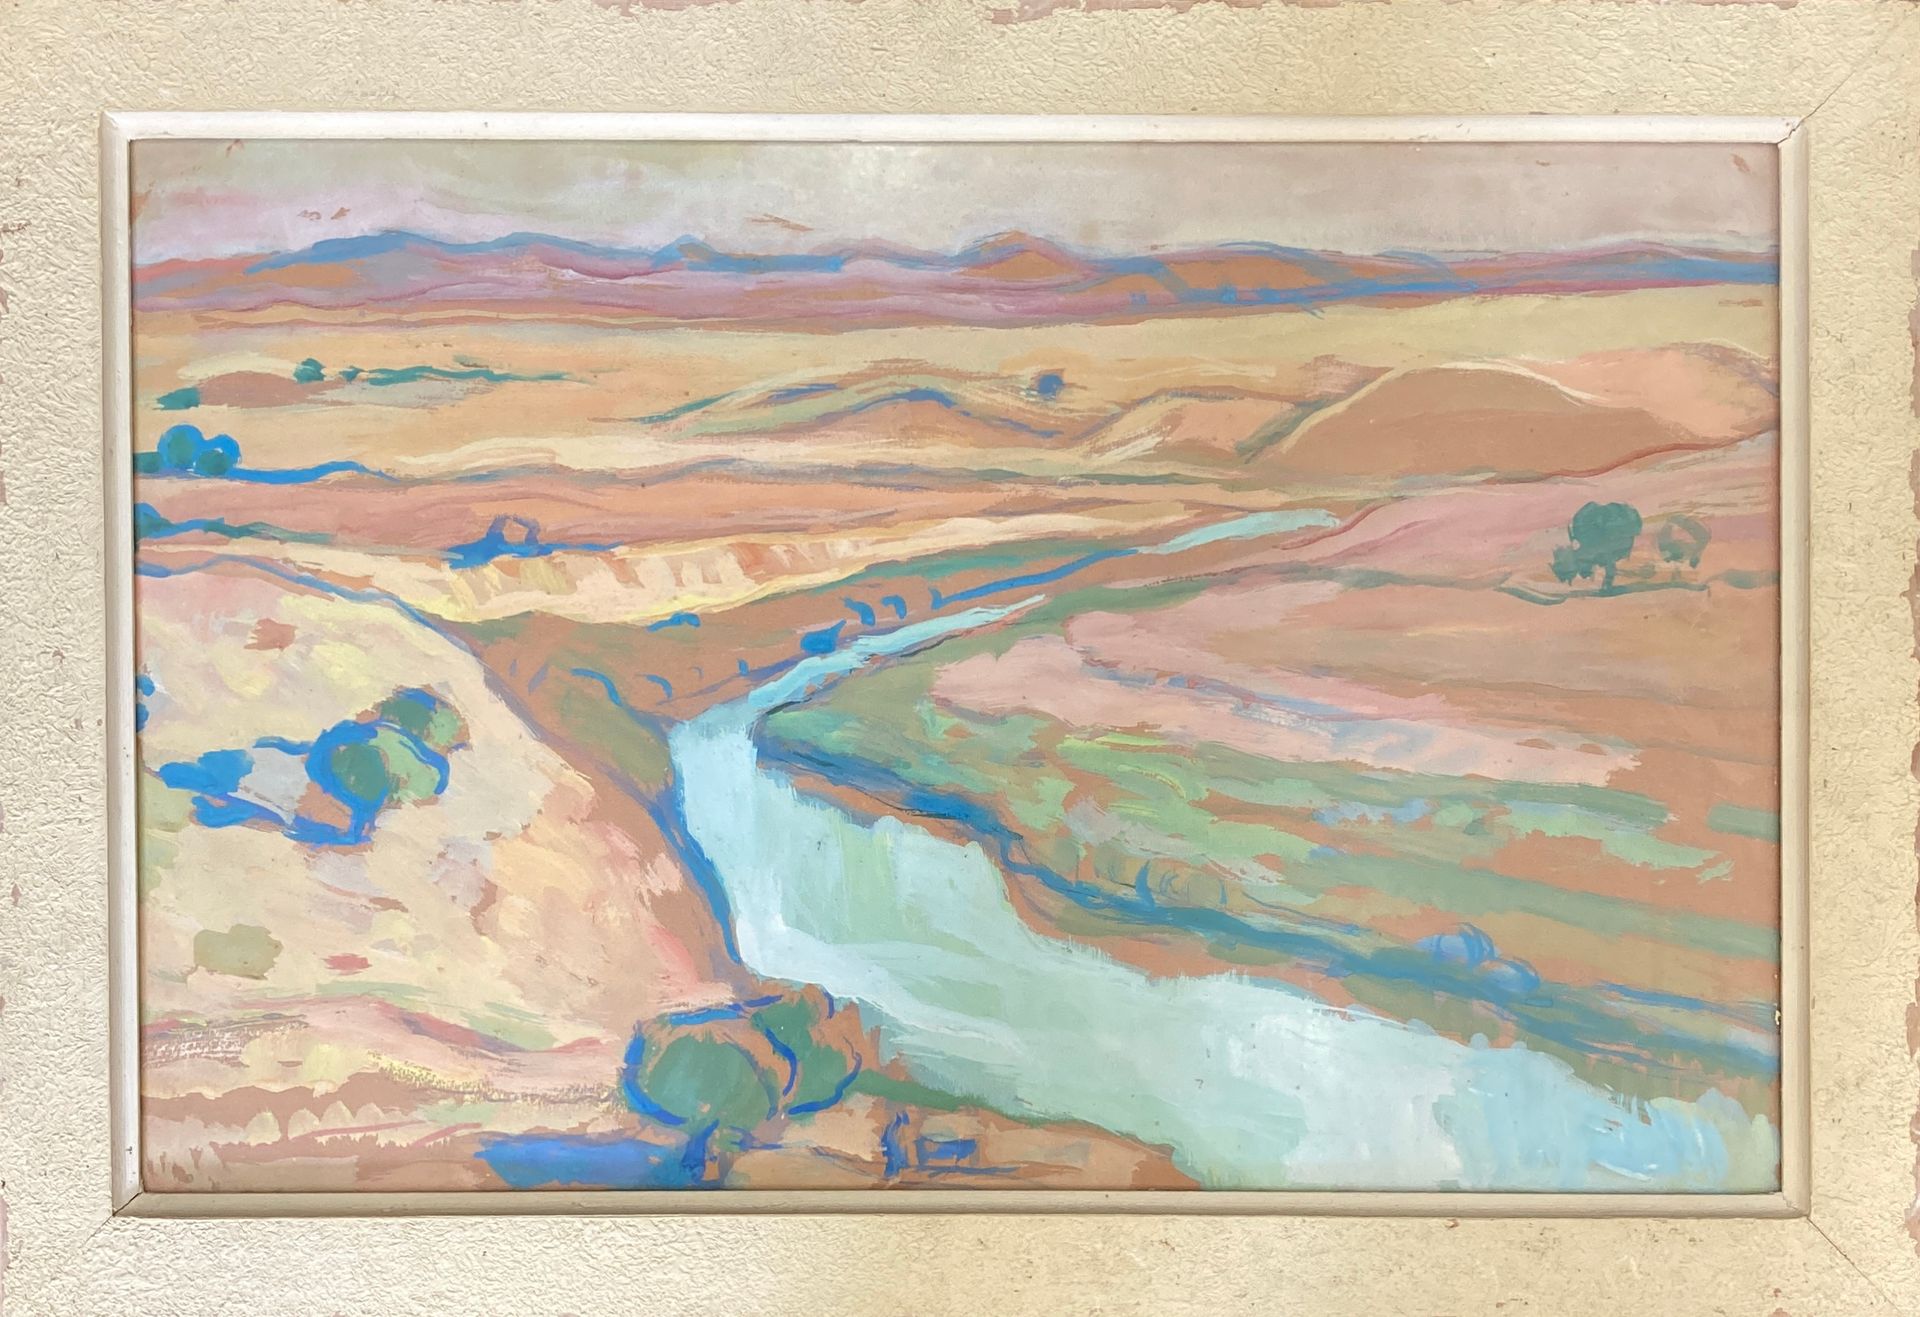 Null 归功于奥古斯丁-费兰多 1880-1957年
布哈尼菲亚的河
纸上水粉画。
无签名。
高31厘米。长49厘米。